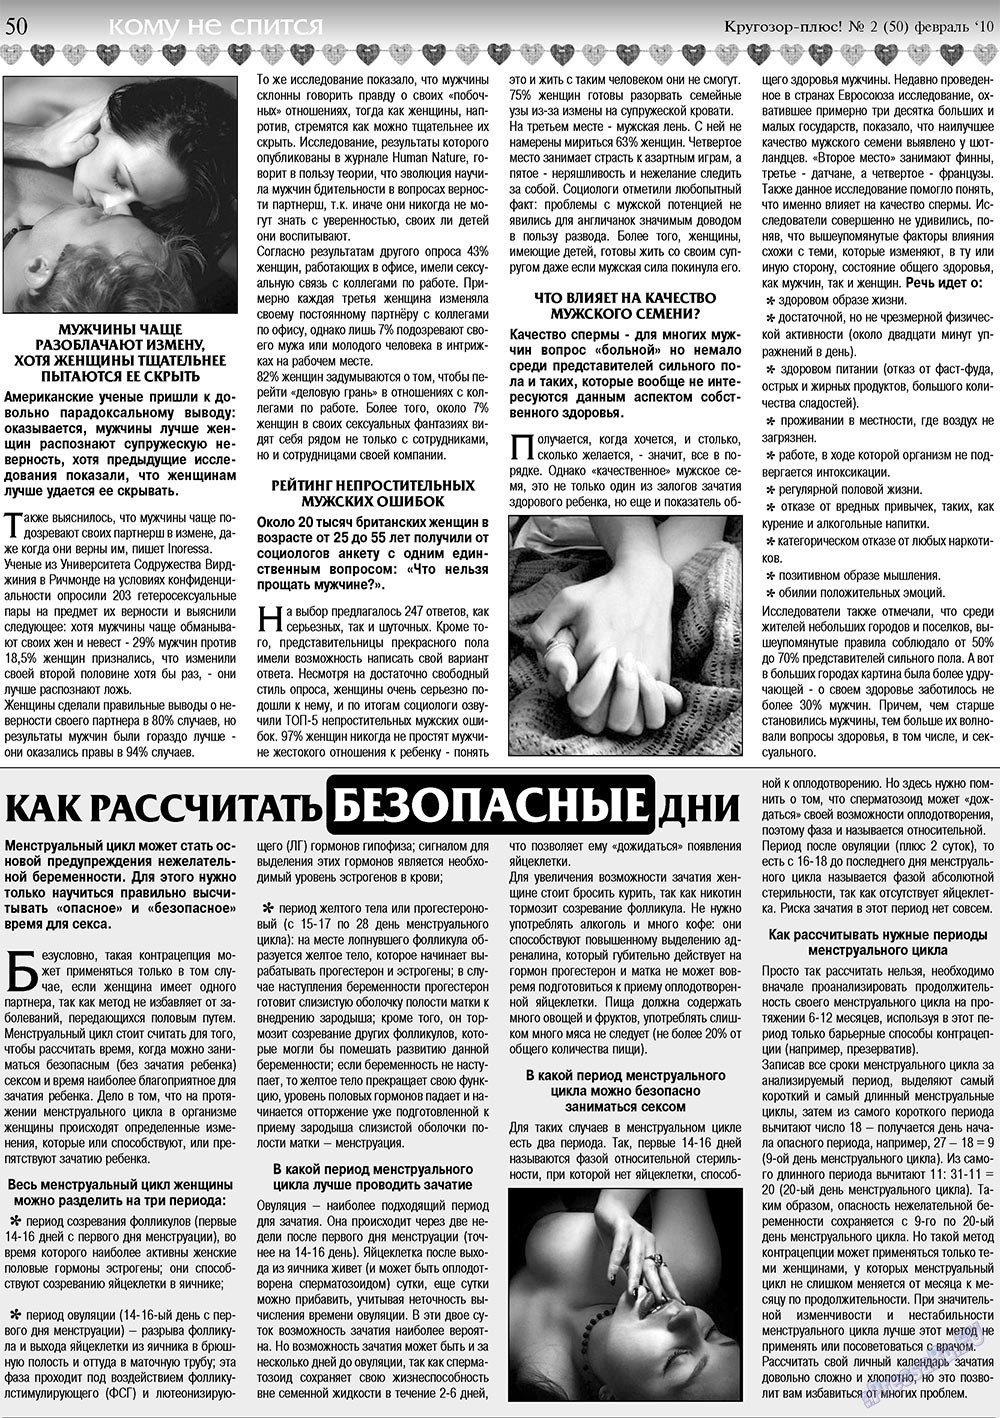 Кругозор плюс!, газета. 2010 №2 стр.50